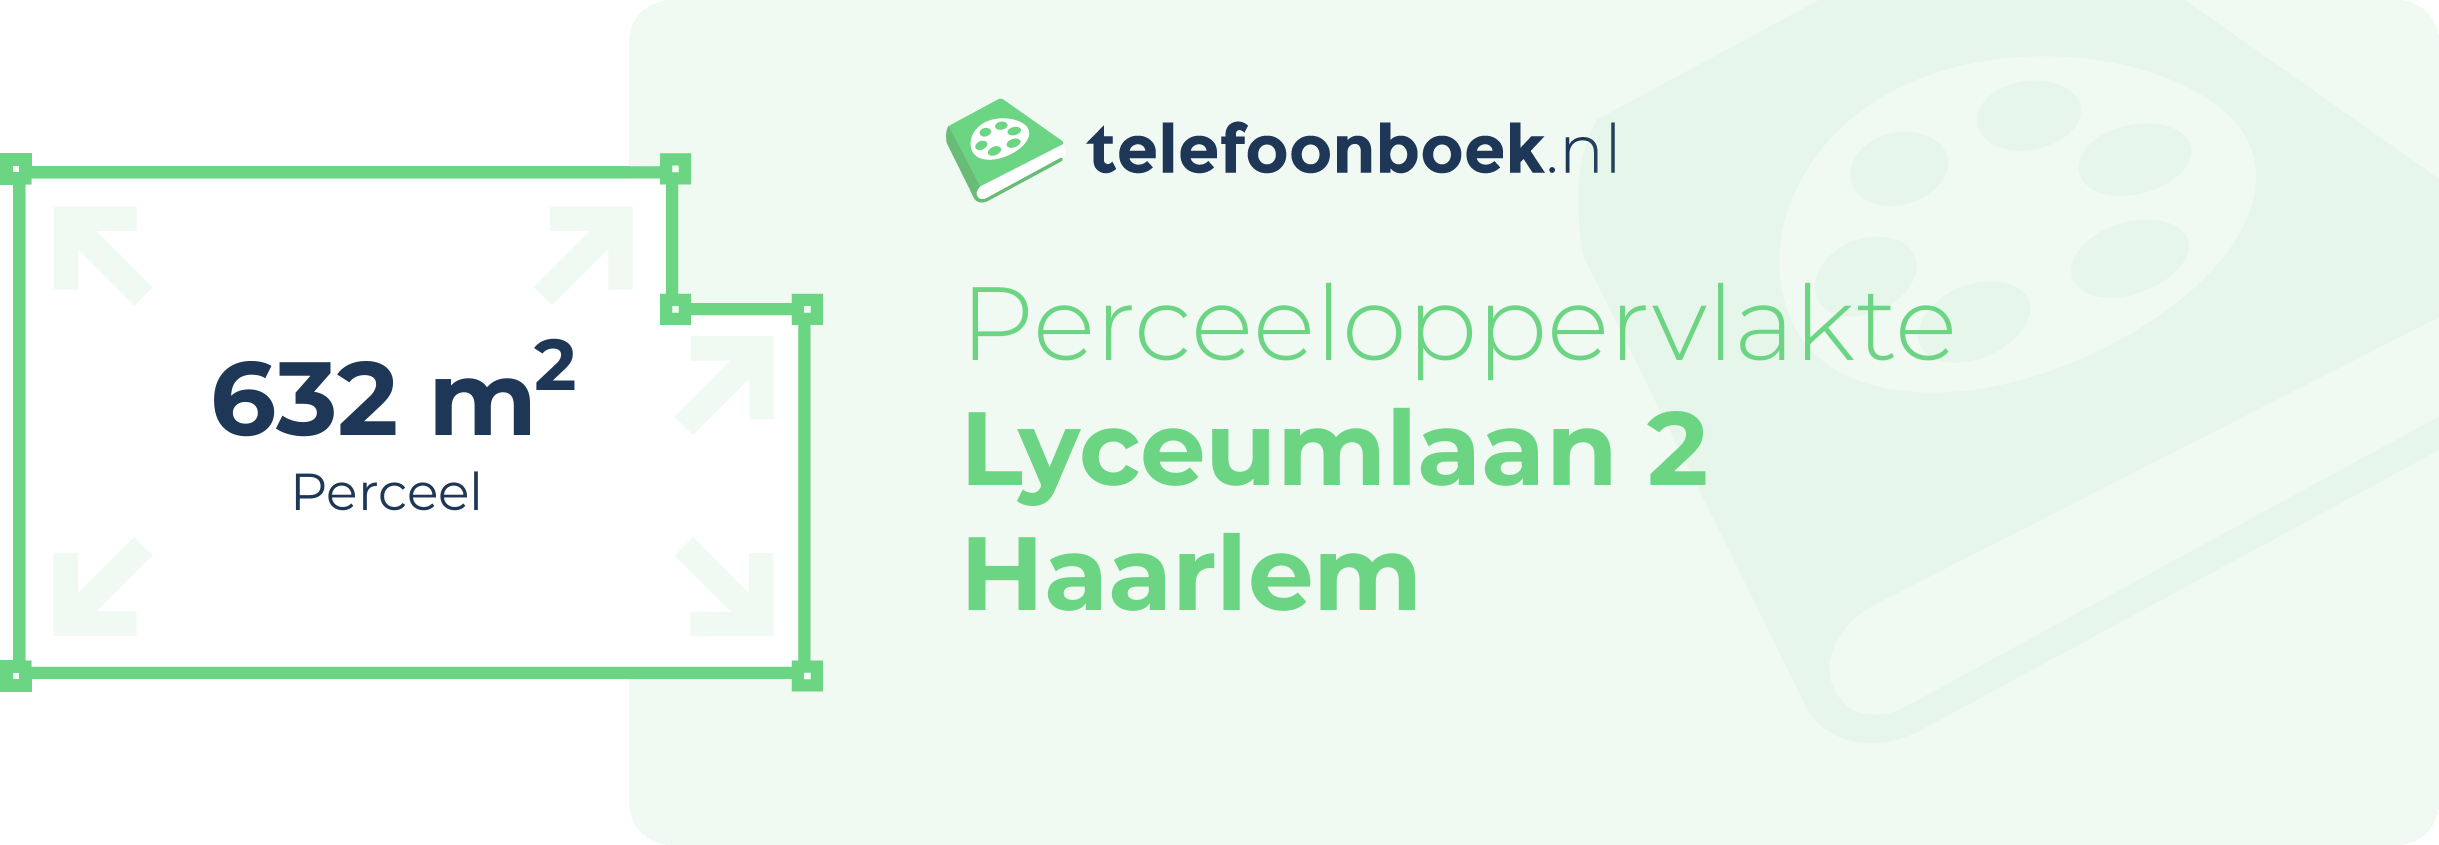 Perceeloppervlakte Lyceumlaan 2 Haarlem